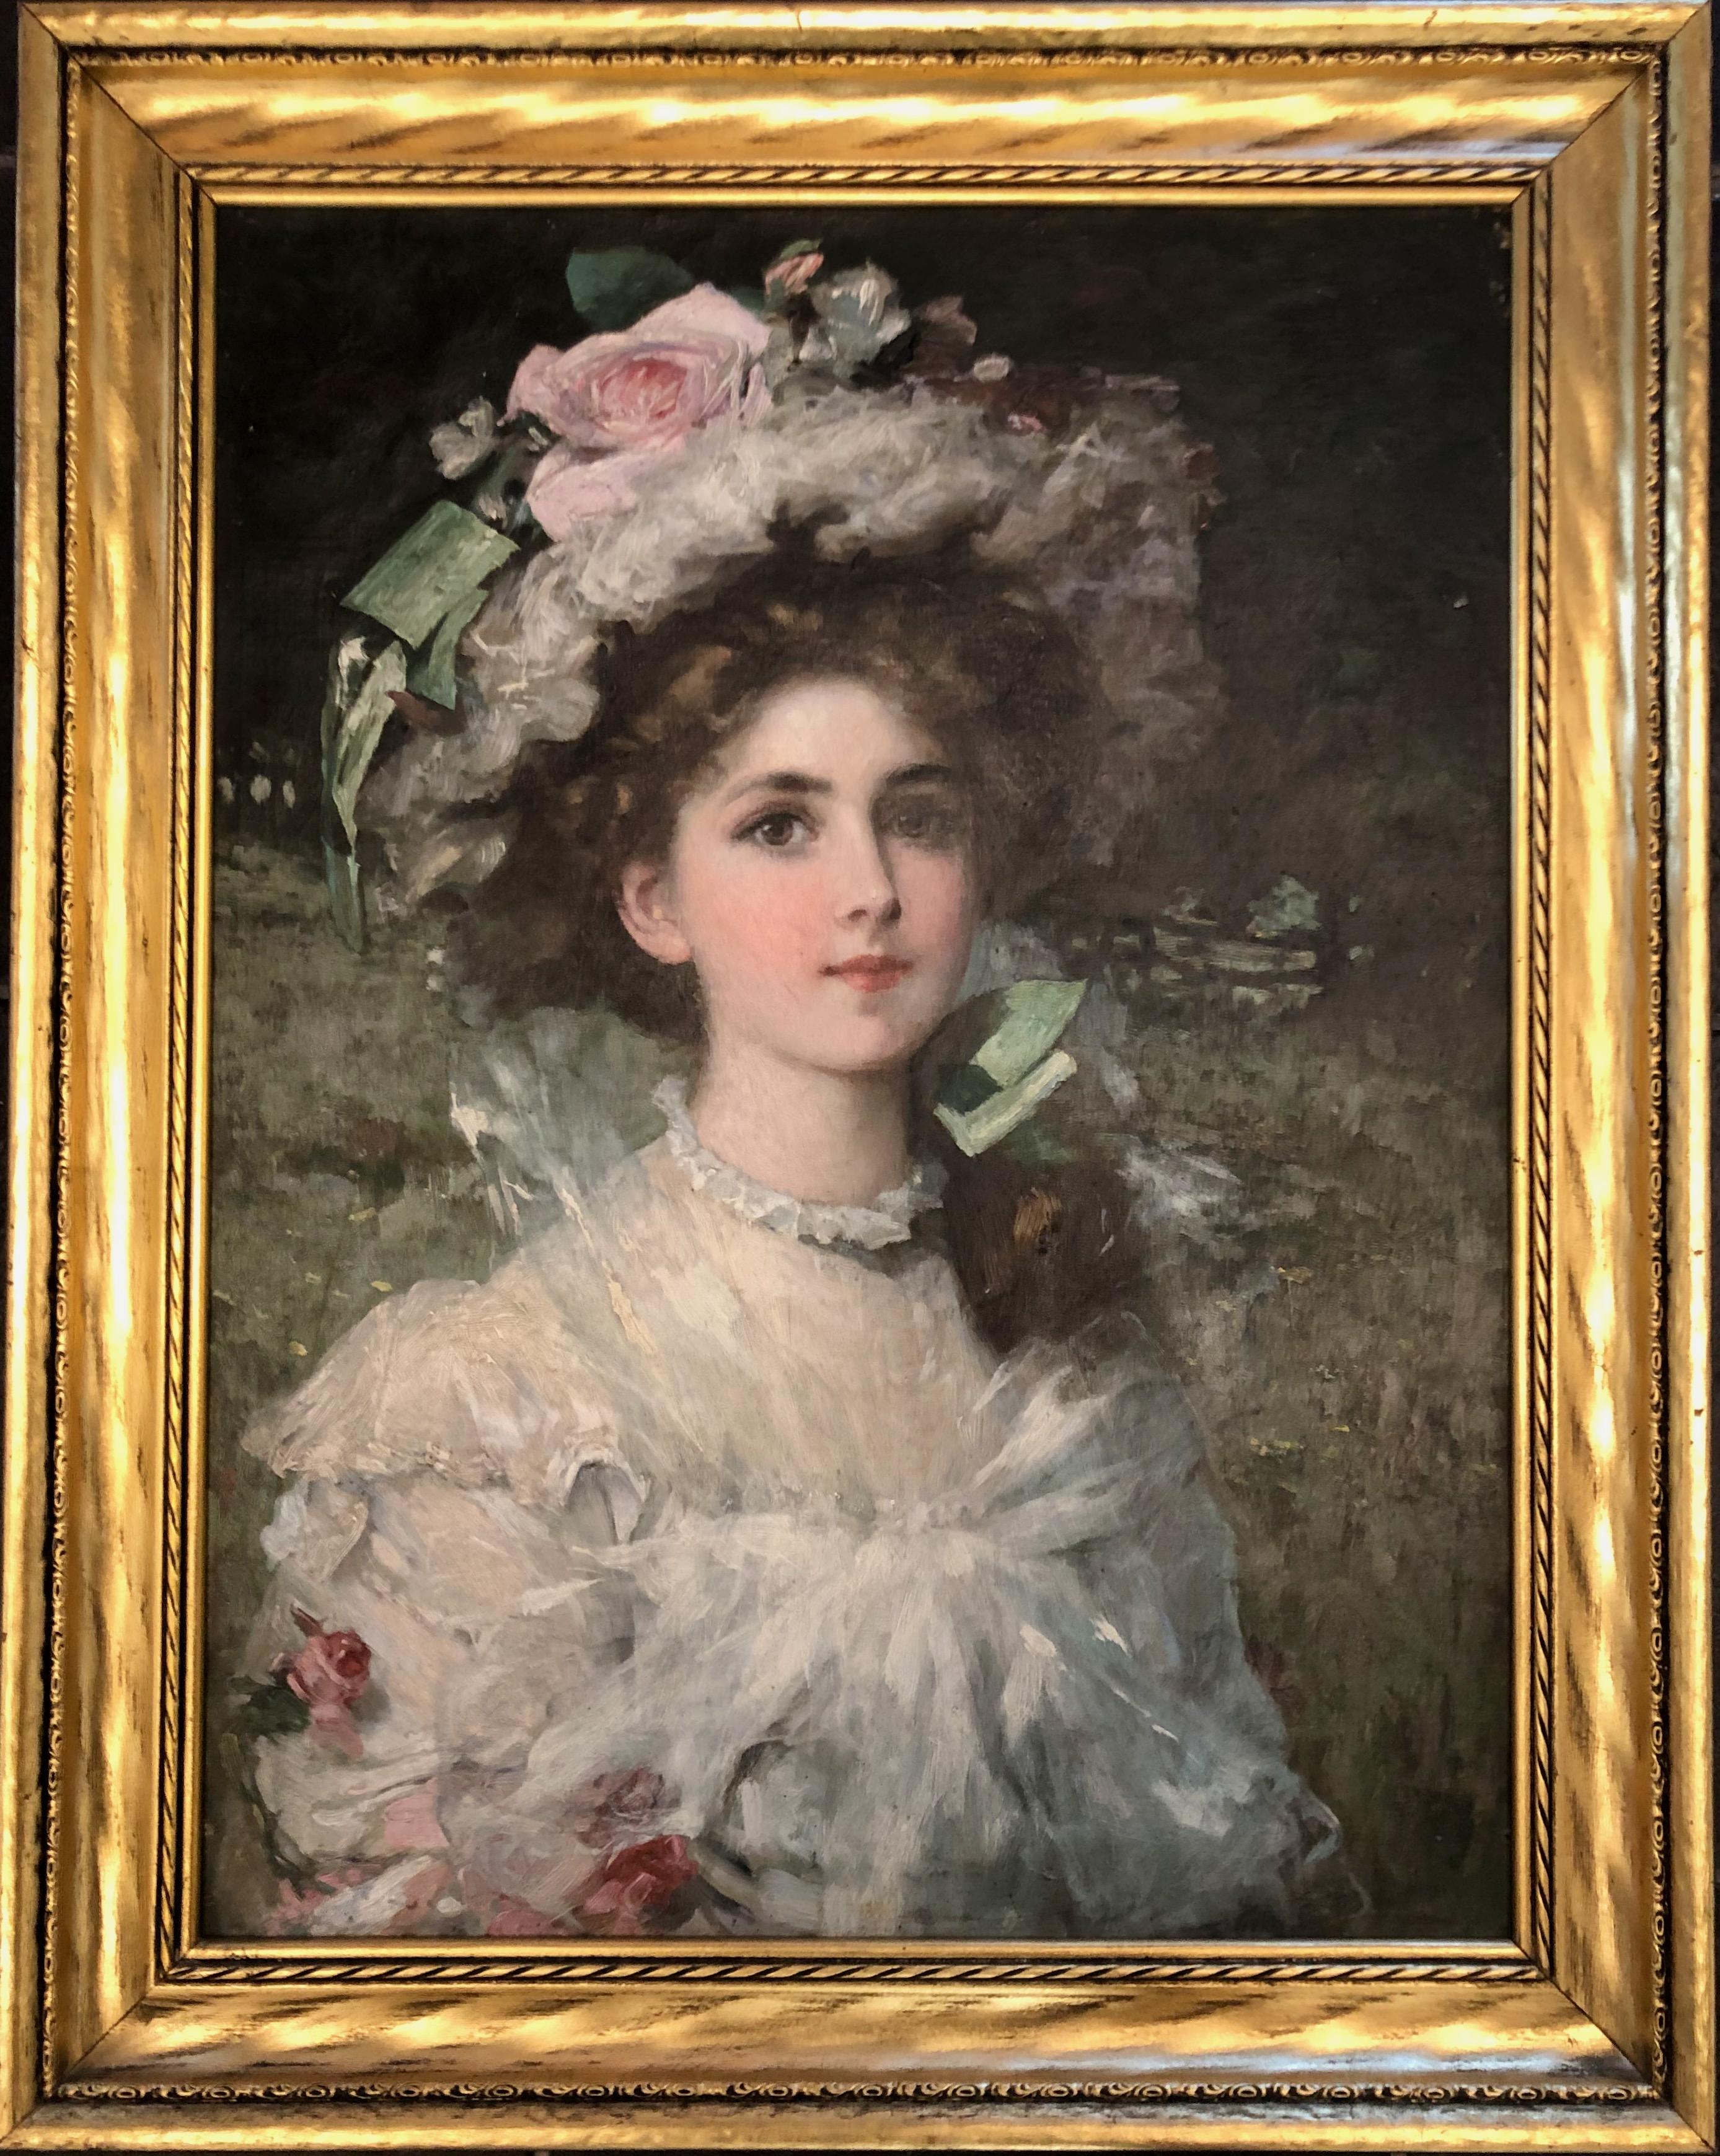  Elegante junge Dame in der Landschaft.
Porträt einer schönen jungen Frau in der Landschaft, gekleidet in ein Tüllkleid und einen mit rosa Rosen geschmückten Hut.
Das Gemälde ist in sehr gutem Originalzustand, signiert in der linken oberen Ecke.
Der